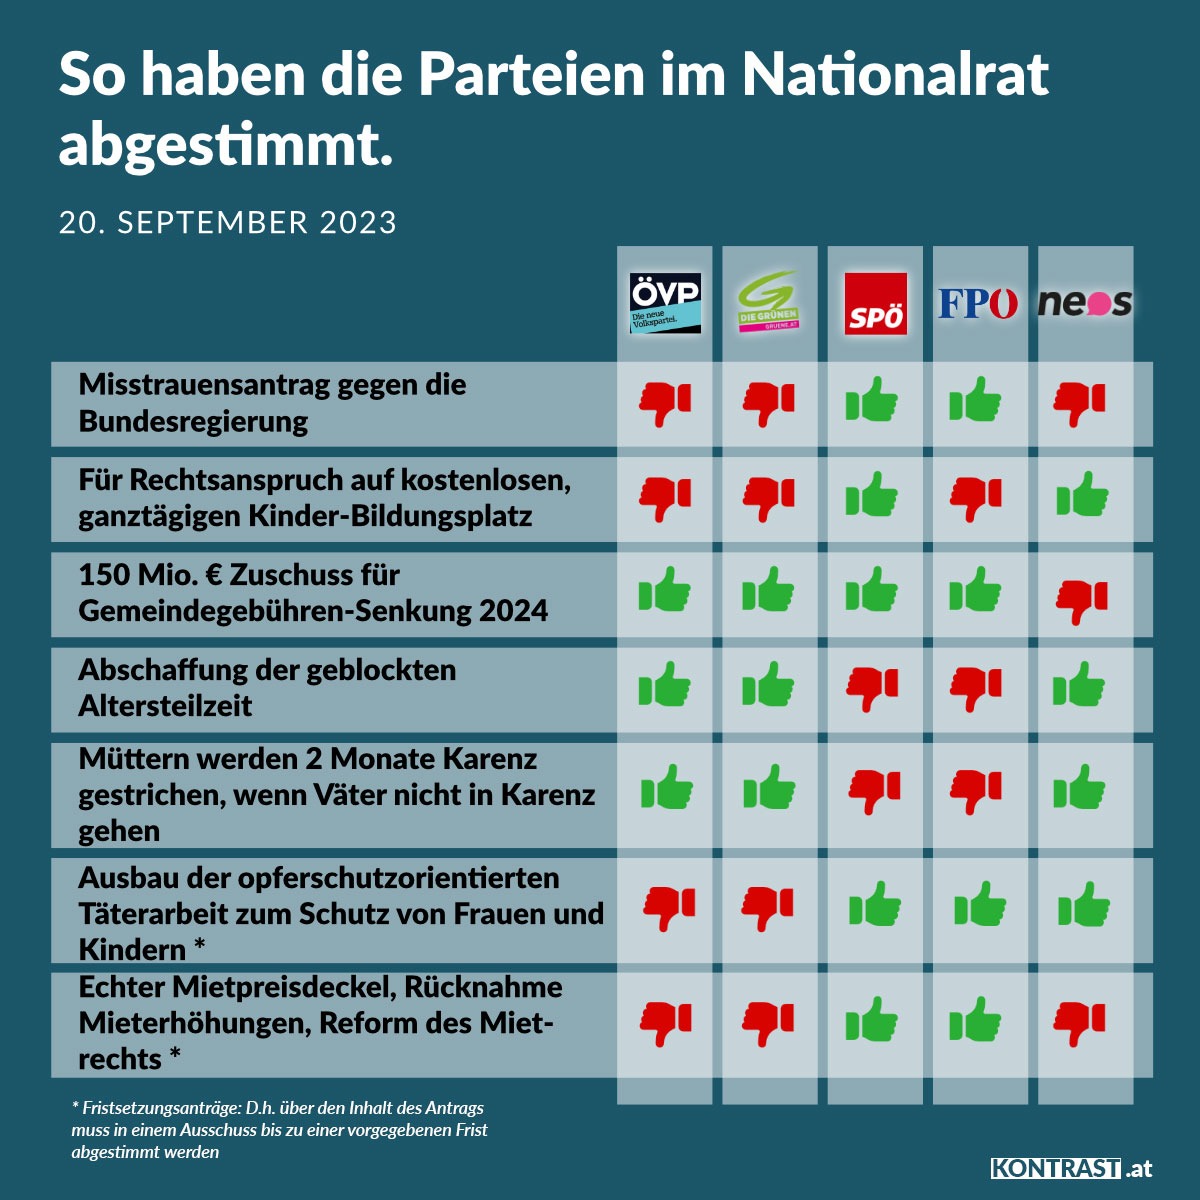 Nationalratssitzung am 20. September 2023: So haben die Parteien abgestimmt